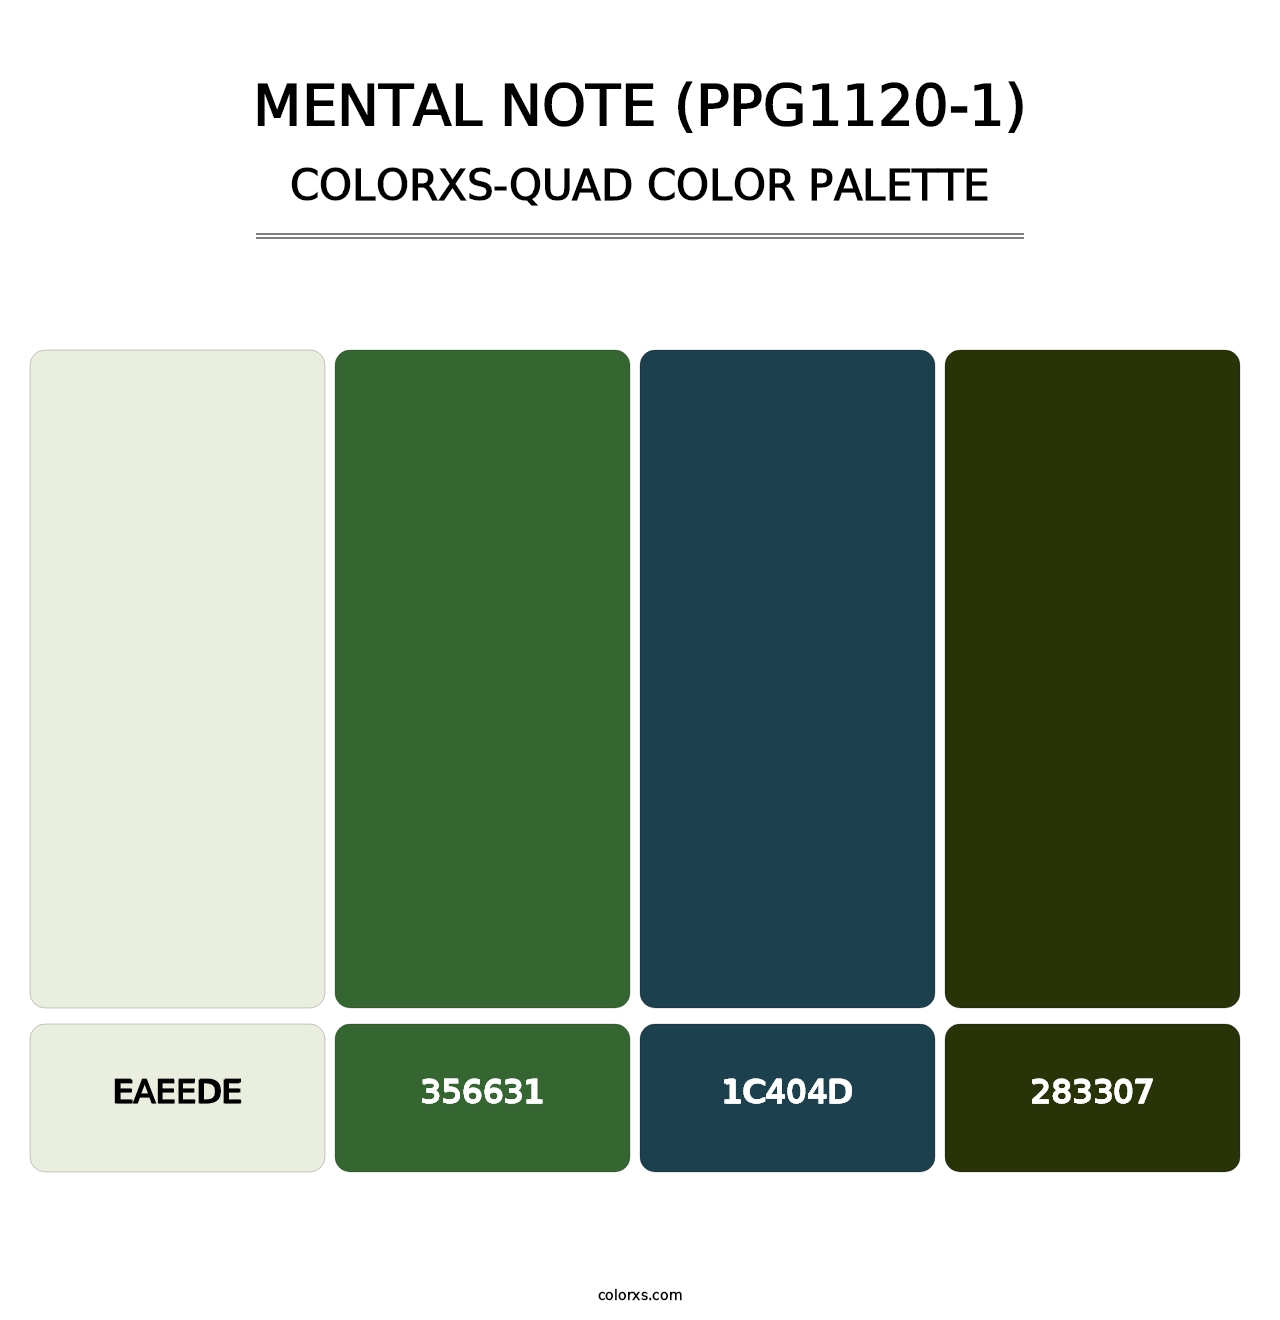 Mental Note (PPG1120-1) - Colorxs Quad Palette